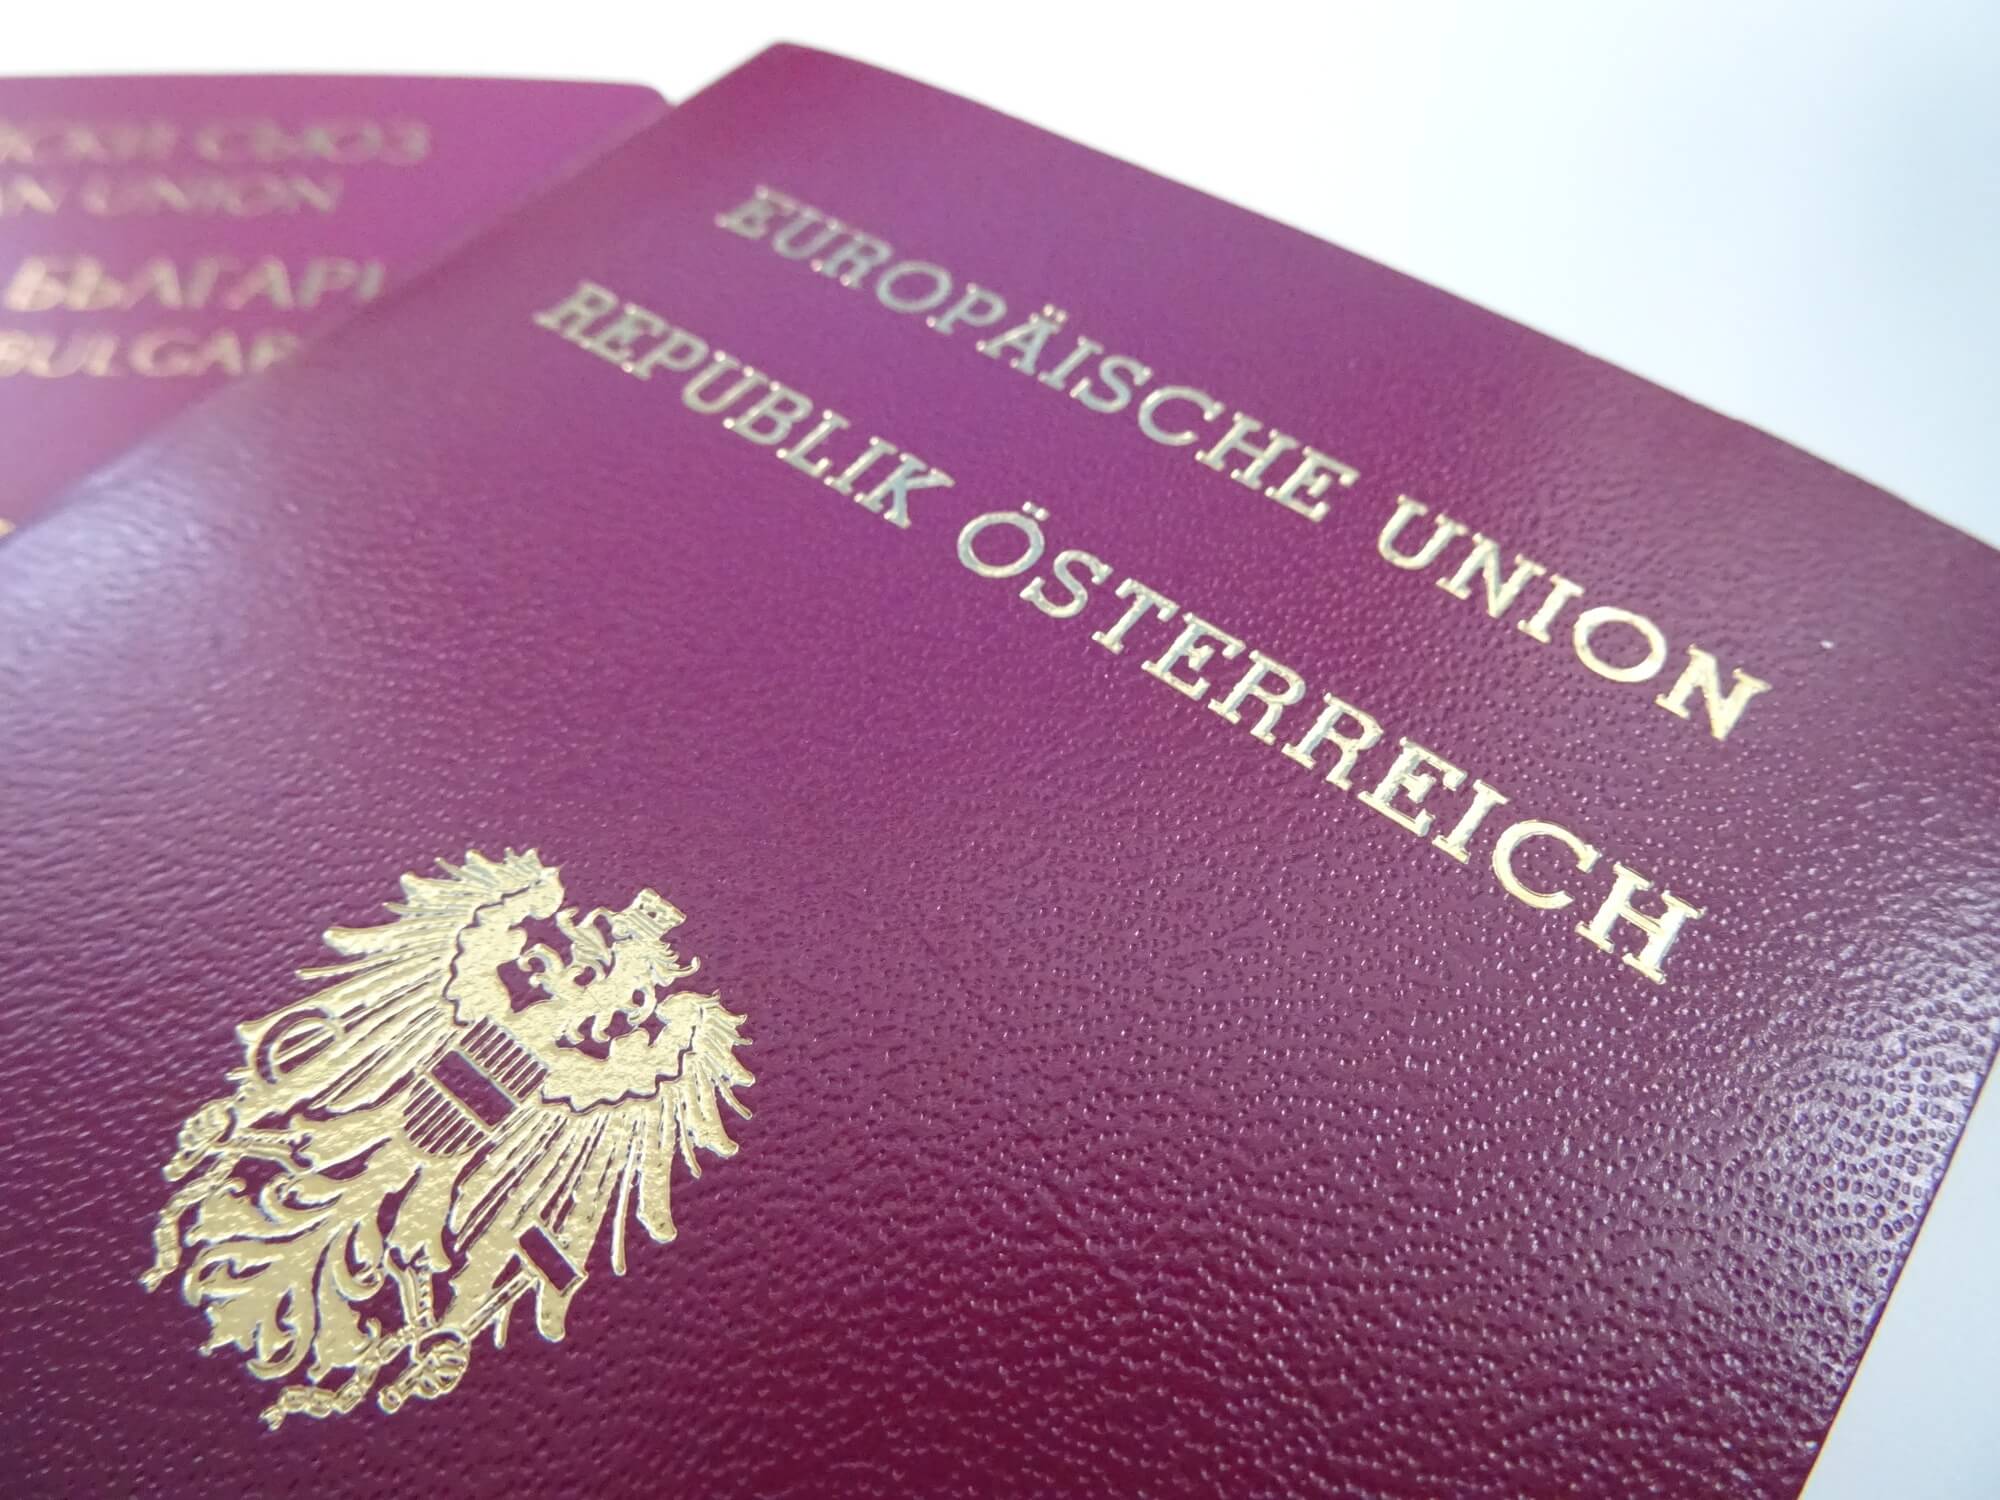 משרד עו"ד טל אופיר - הוצאת דרכון גרמני ואוסטרי מבלי לצאת מהבית